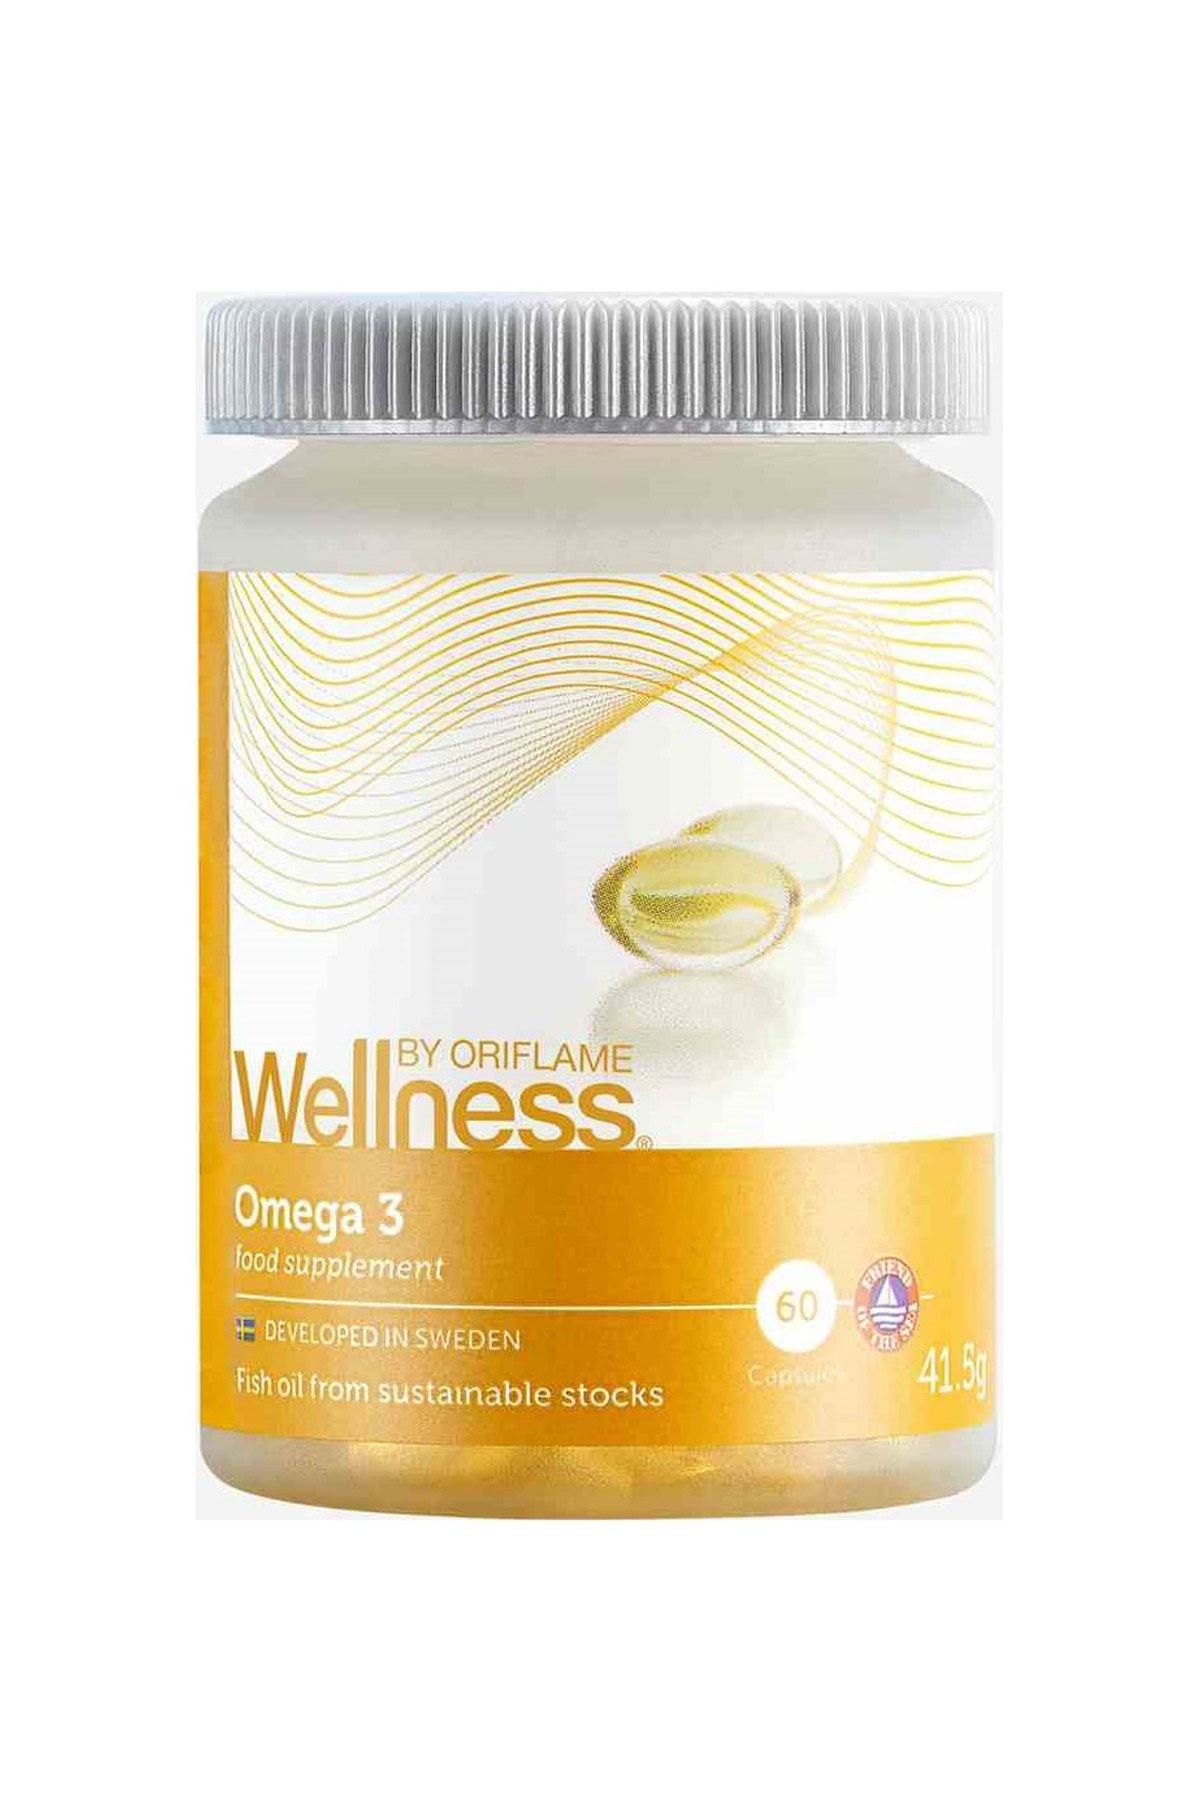 Oriflame By Wellness - Omega 3 Balık Yağı Takviye Edici Gıda